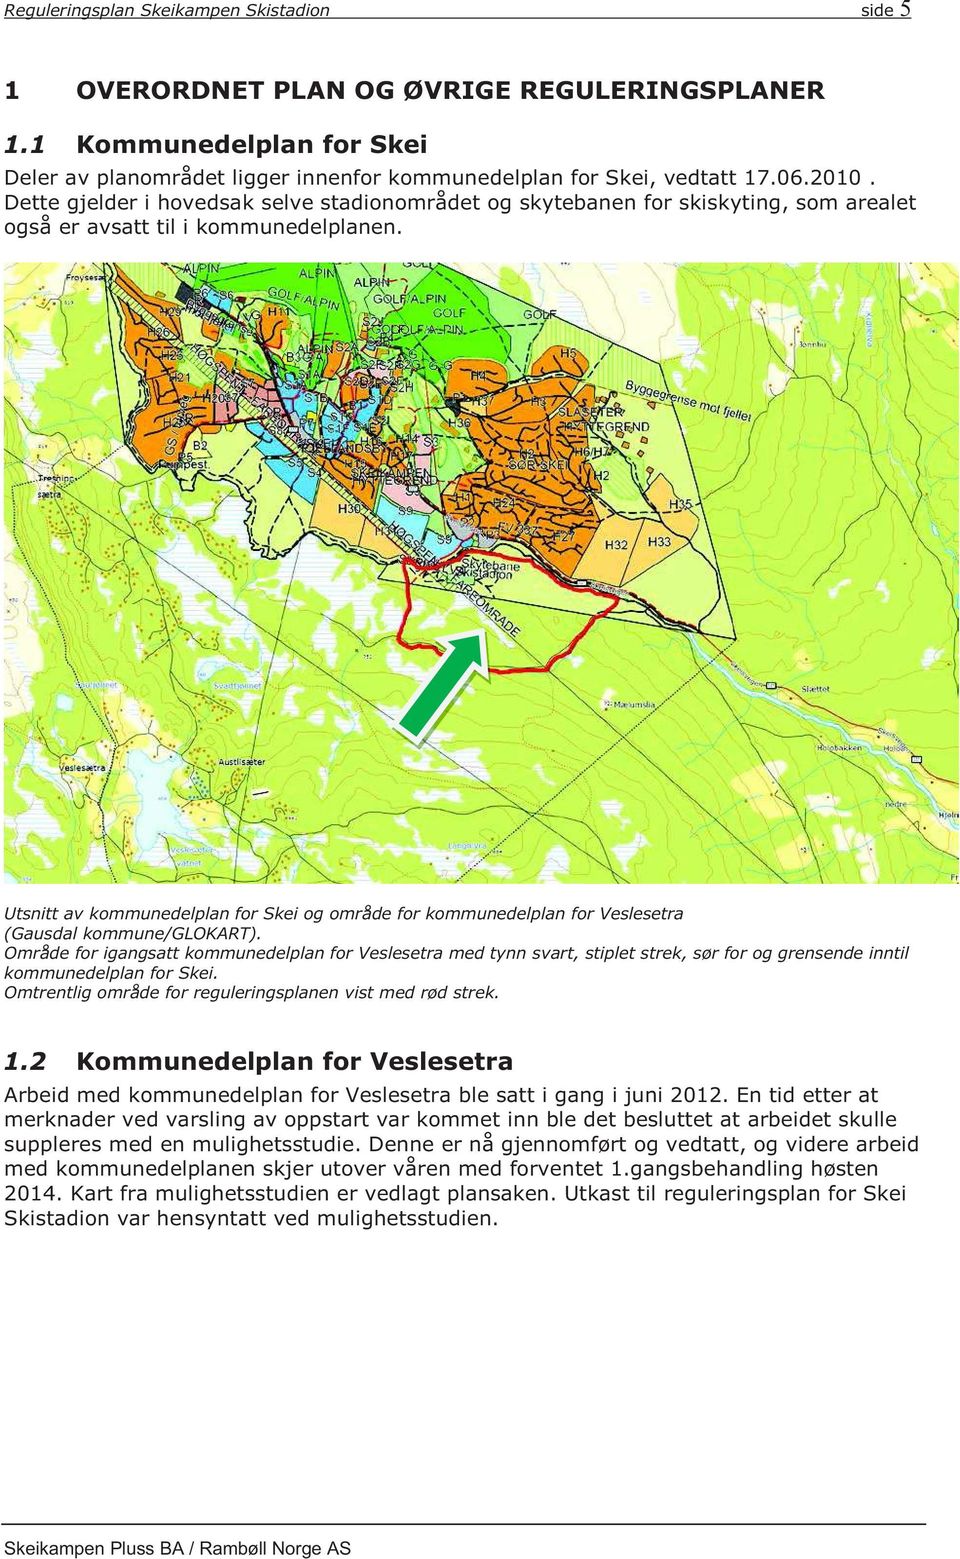 Utsnitt av kommunedelplan for Skei og område for kommunedelplan for Veslesetra (Gausdal kommune/glokart).